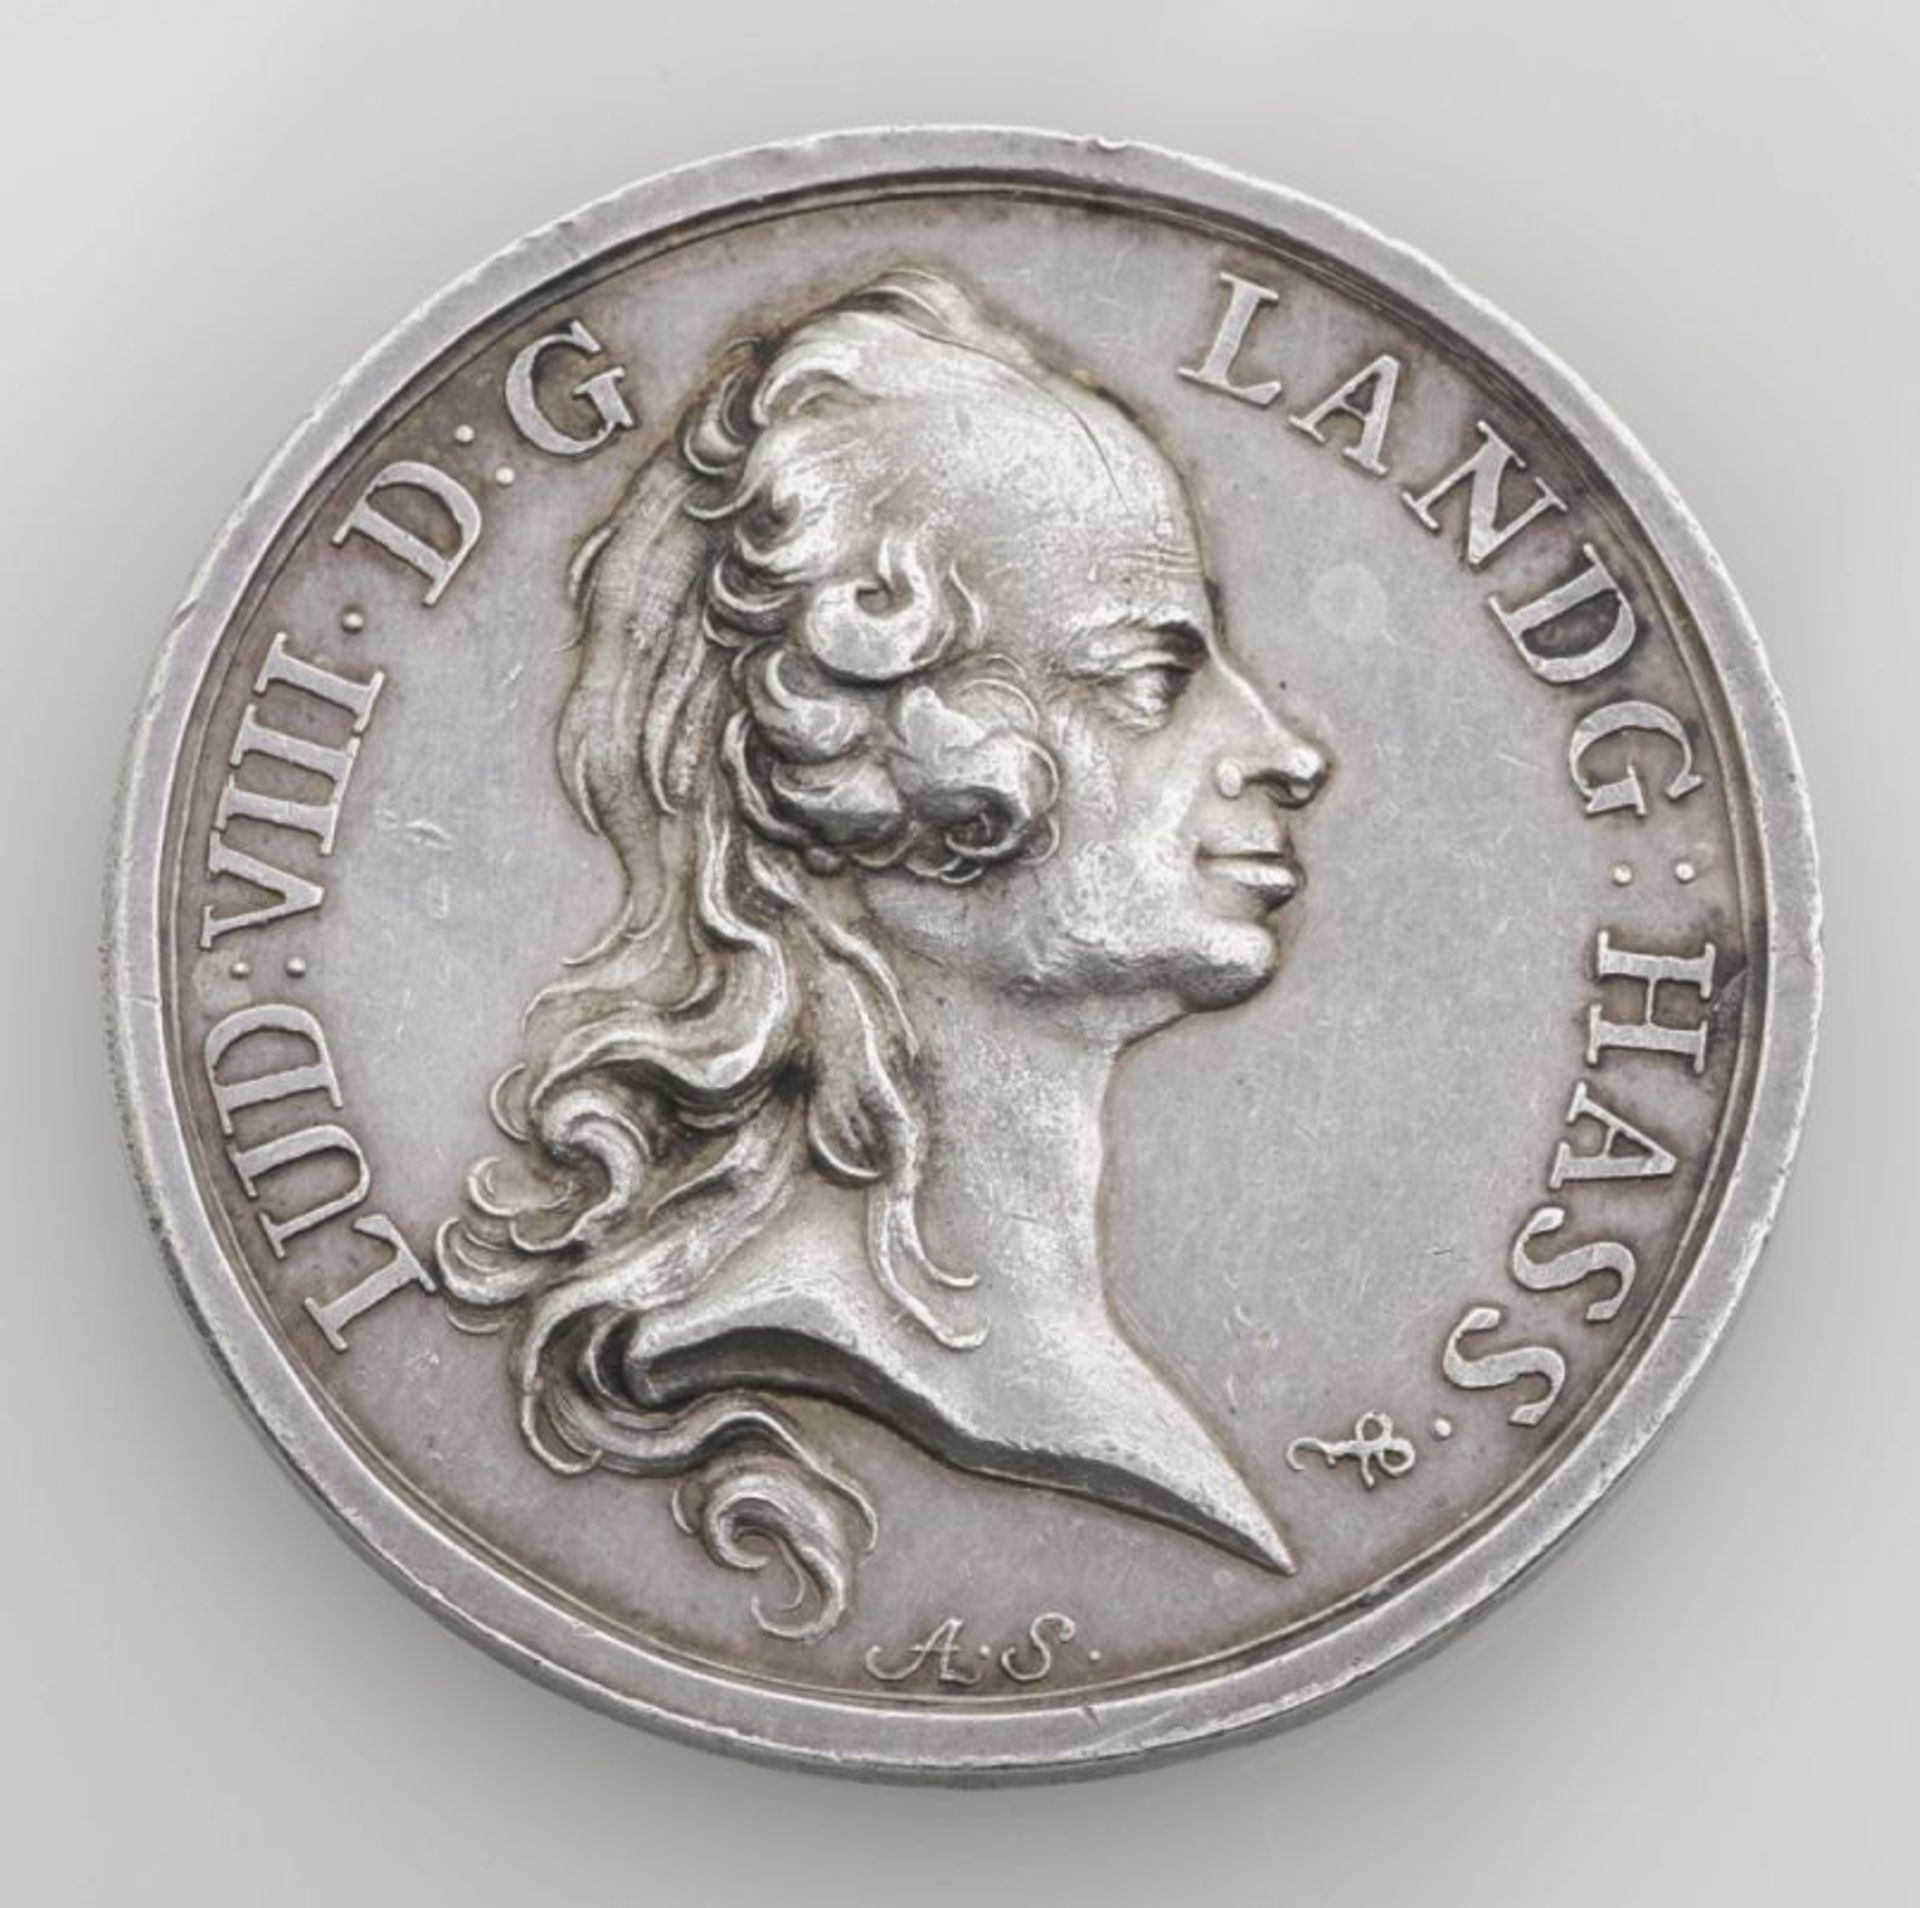 Münze. Jagdtaler. o.J. Um 1750. Stempel von Anton Schäfer. Feine Patina. Winzige Randfehler und